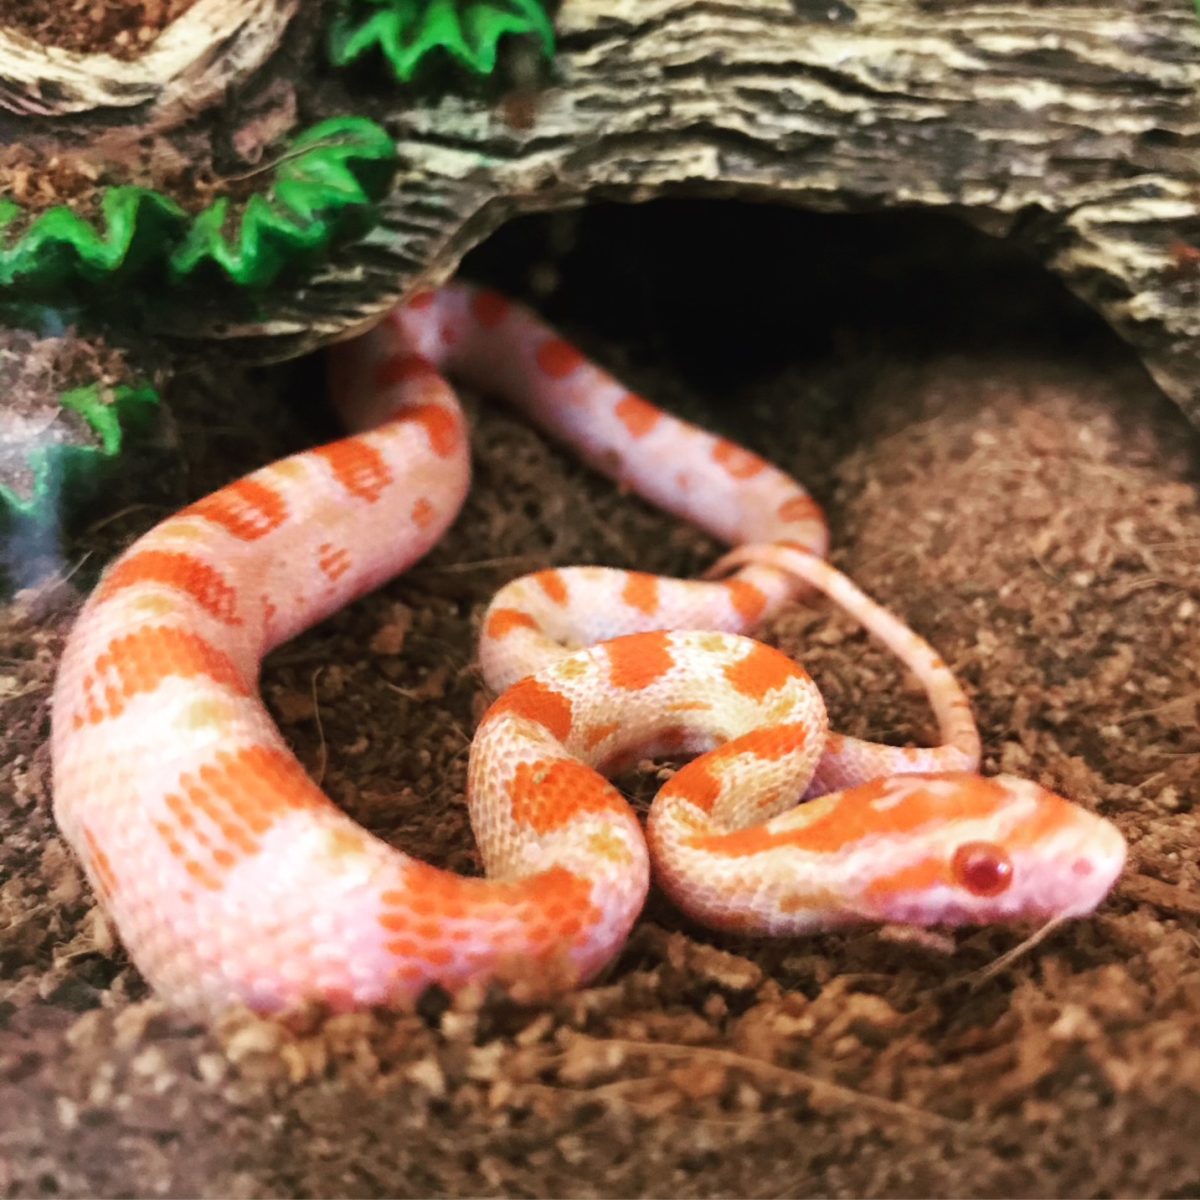 Reggie, the snake